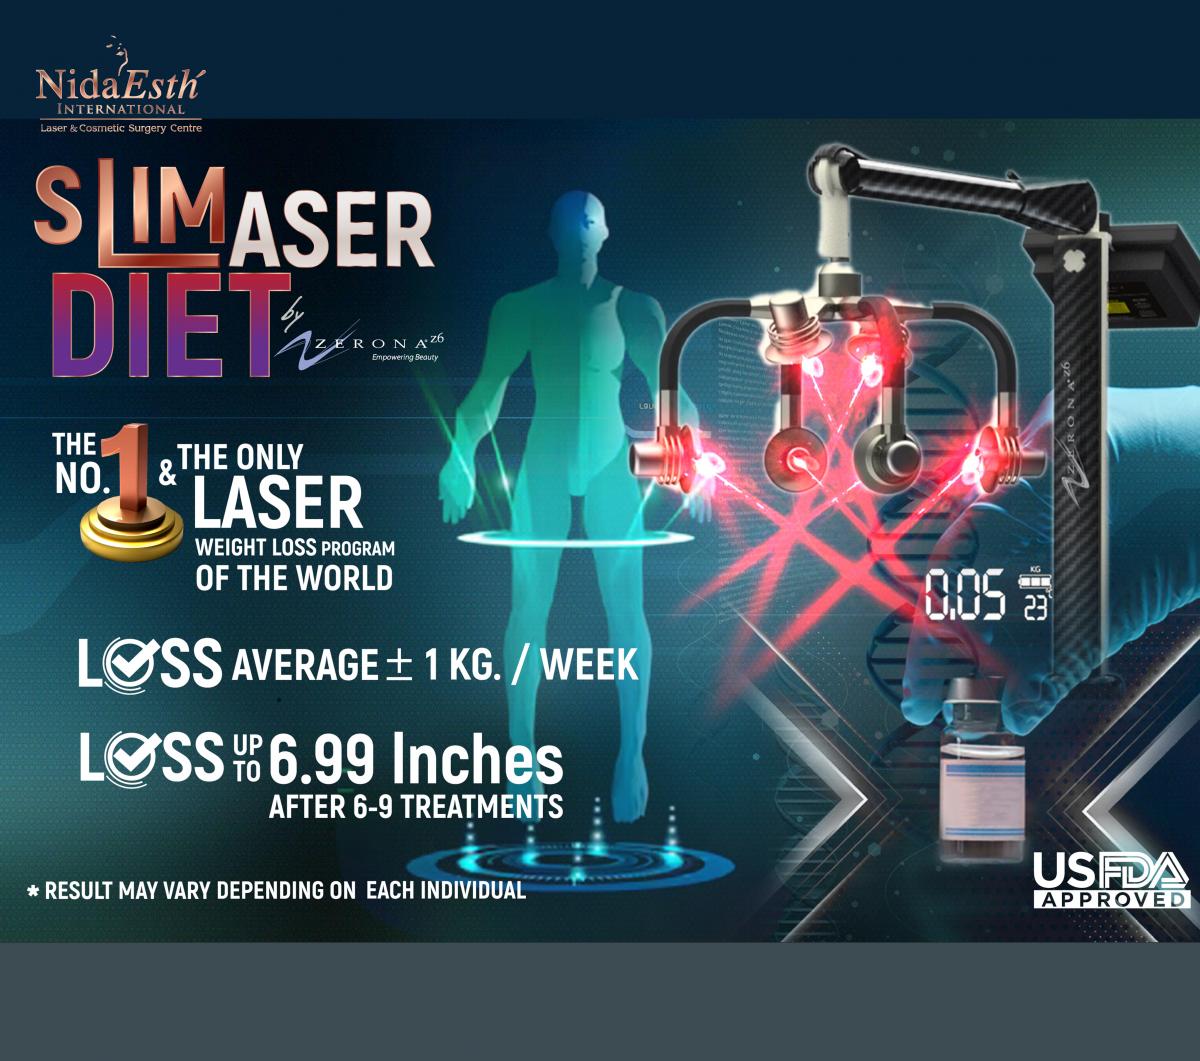 Slim Laser Diet